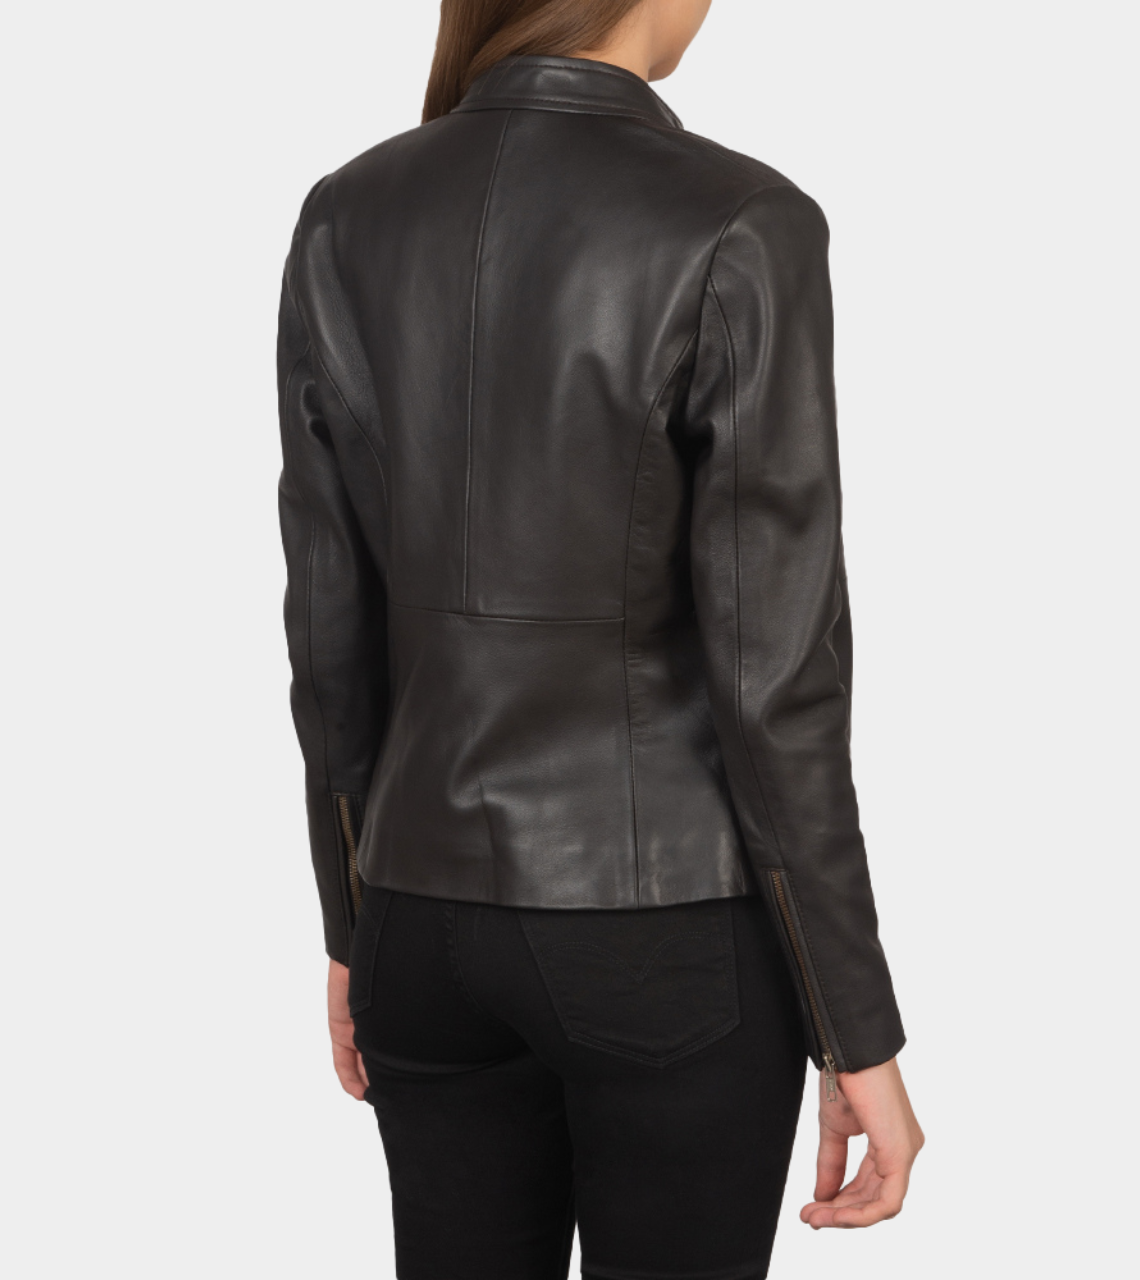 Rocher Women's Biker Leather Jacket Back